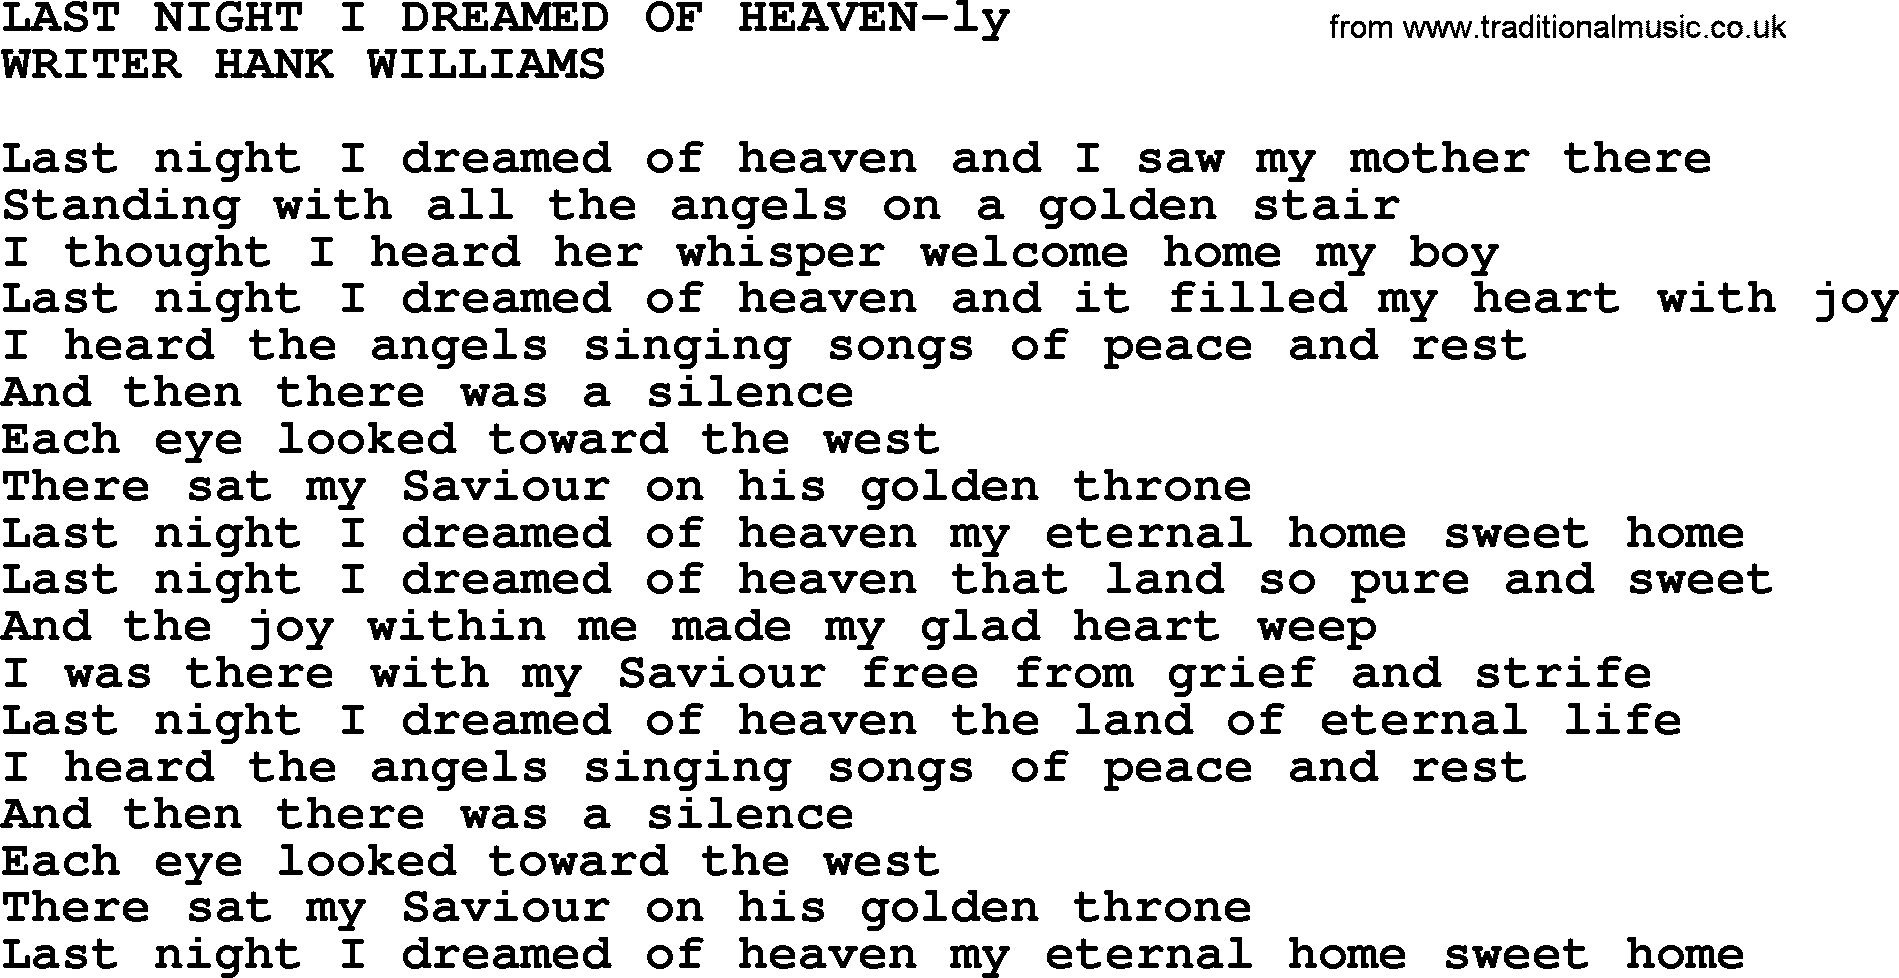 Hank Williams song Last Night I Dreamed Of Heaven, lyrics